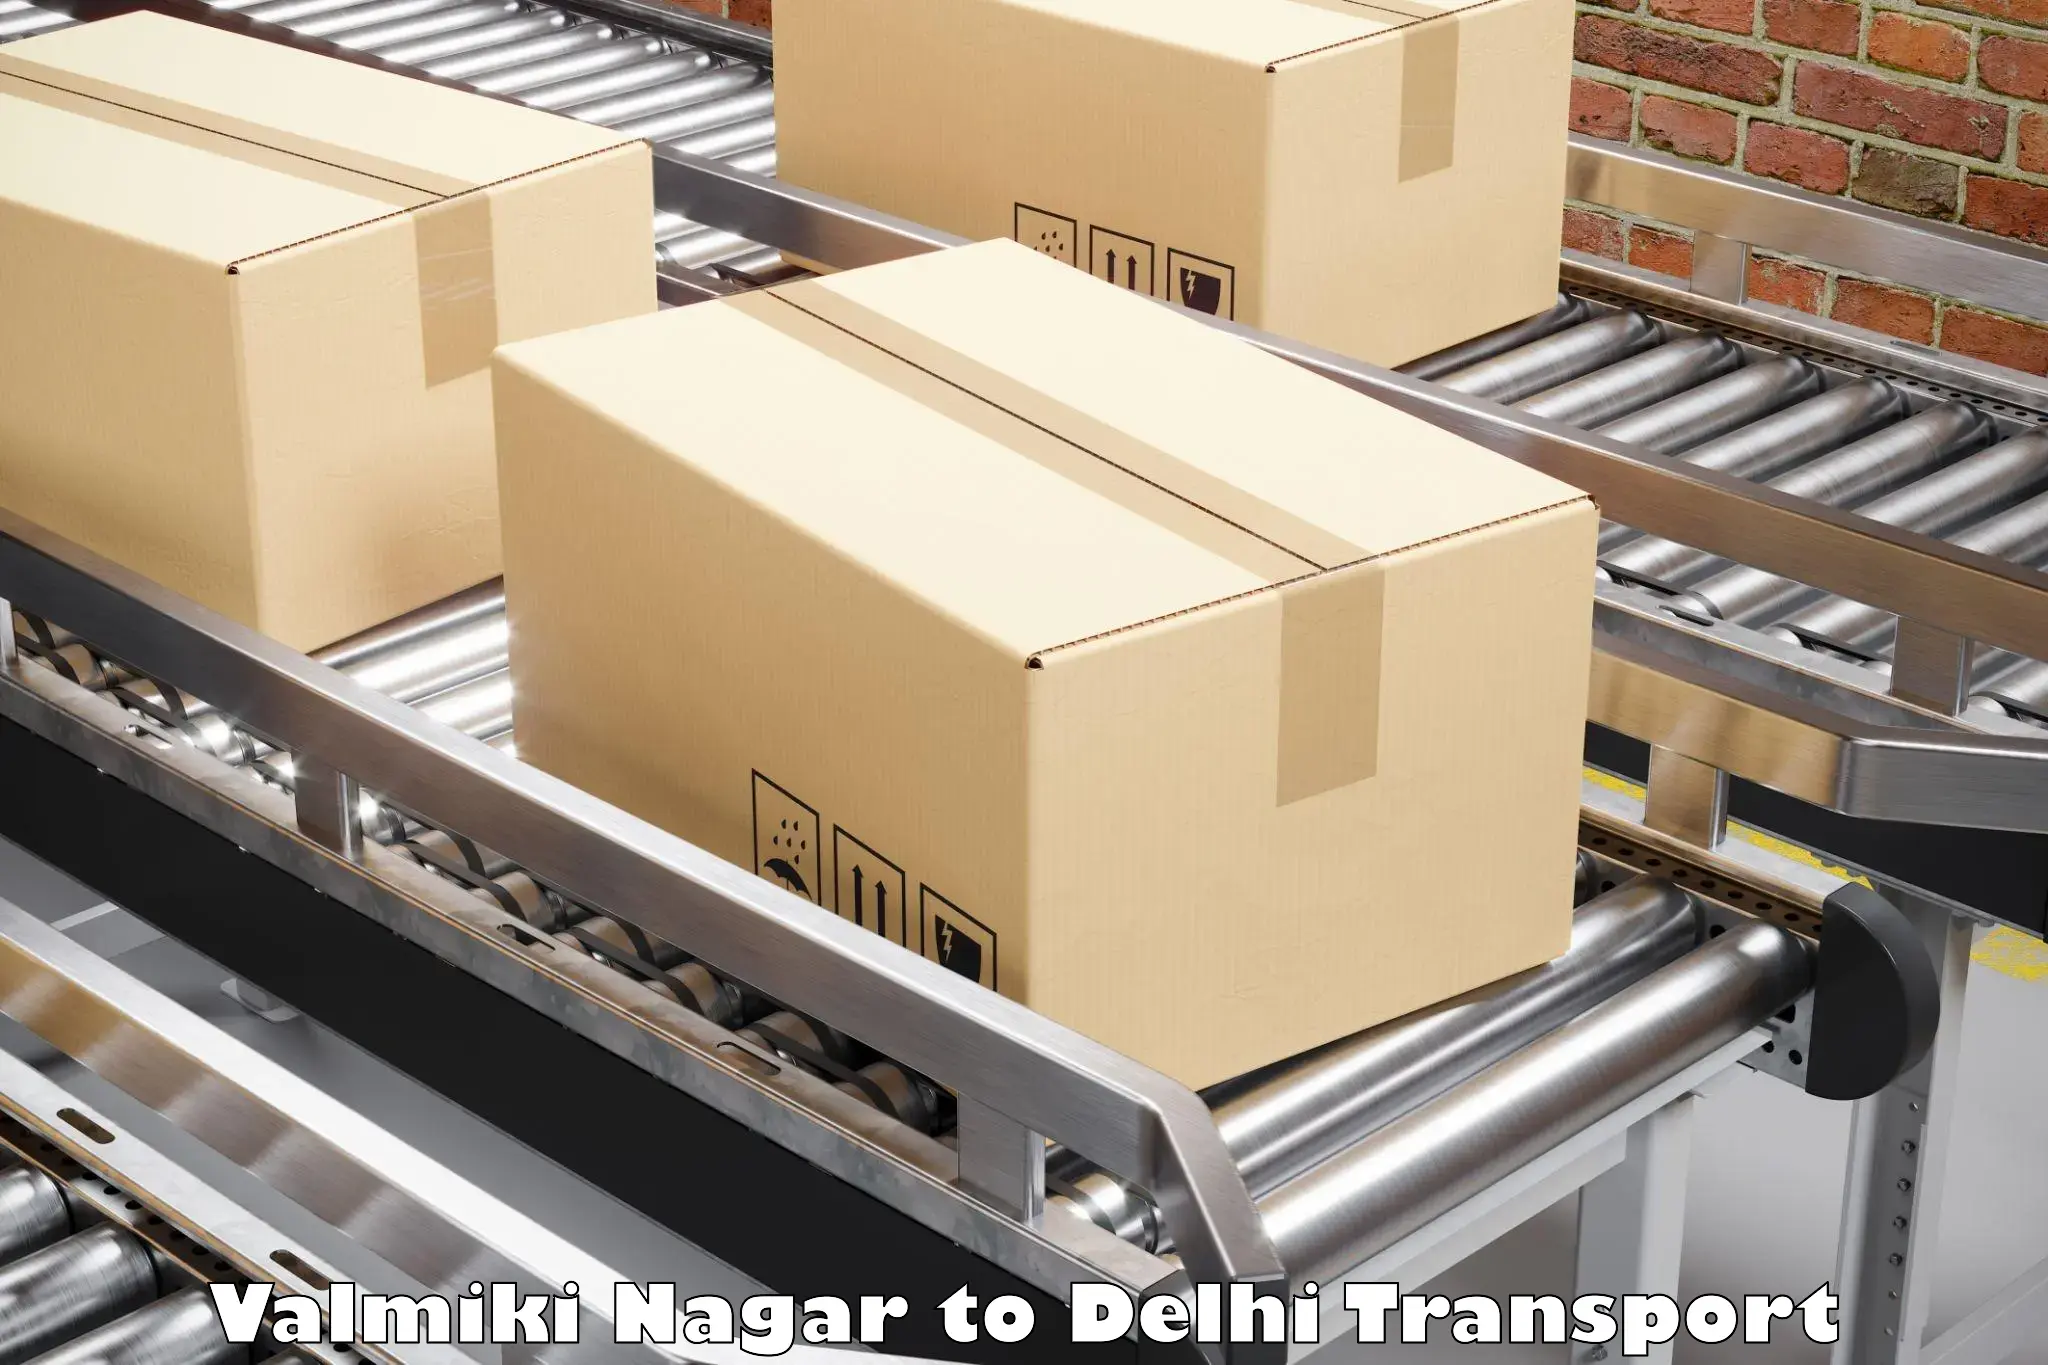 Air freight transport services in Valmiki Nagar to Delhi